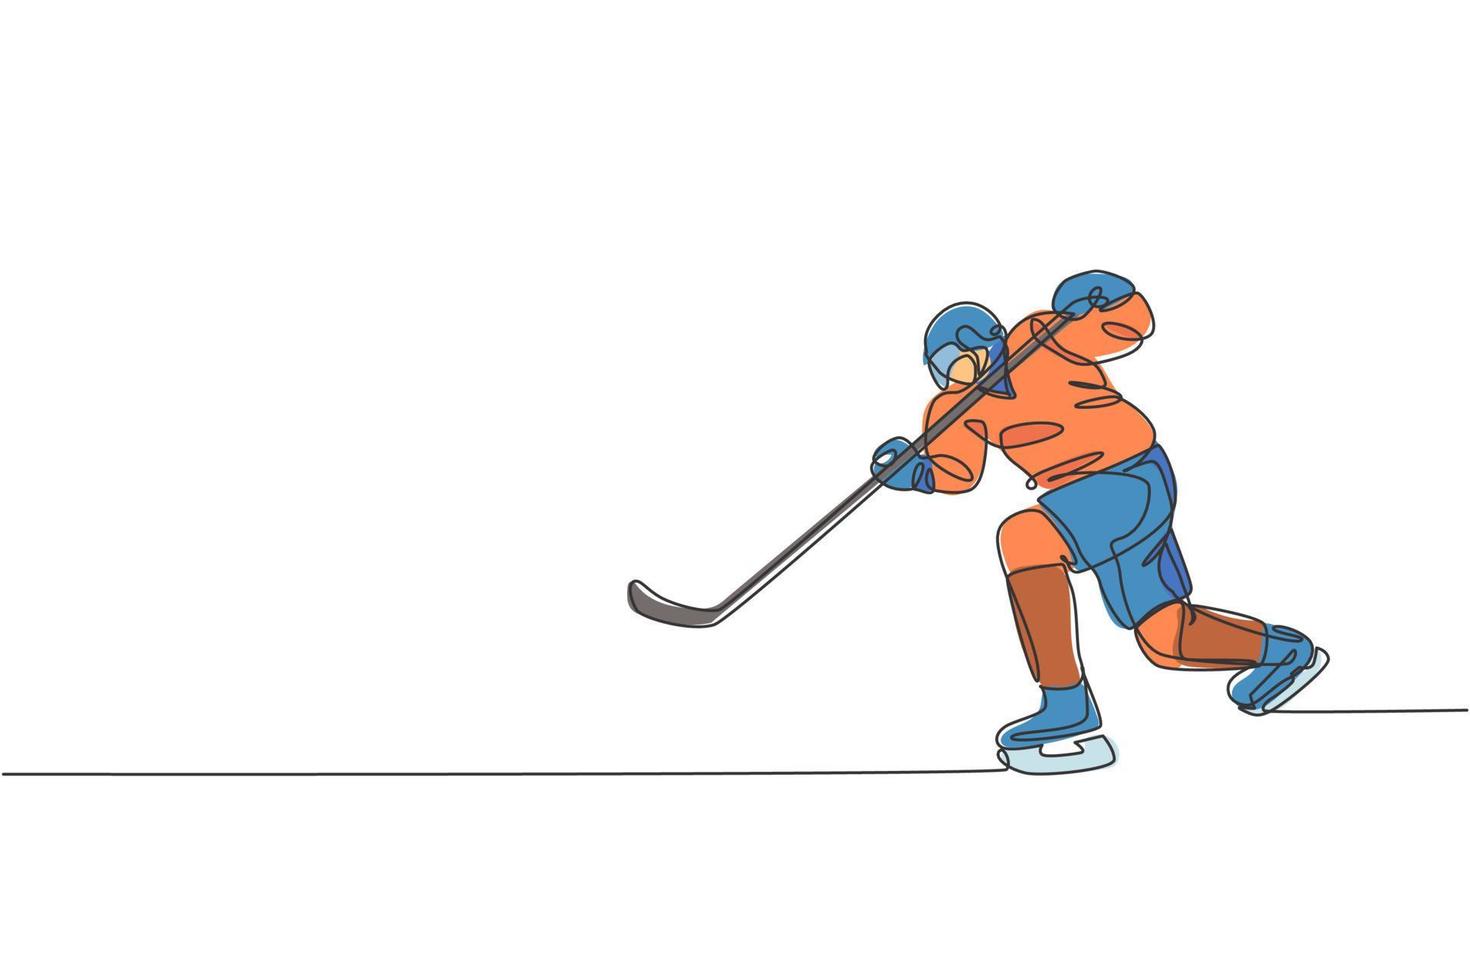 en enda linjeteckning av ung ishockeyspelare i aktion för att spela ett konkurrenskraftigt spel på ishallstadion vektorgrafisk illustration. sport turnering koncept. modern kontinuerlig linjeritningsdesign vektor